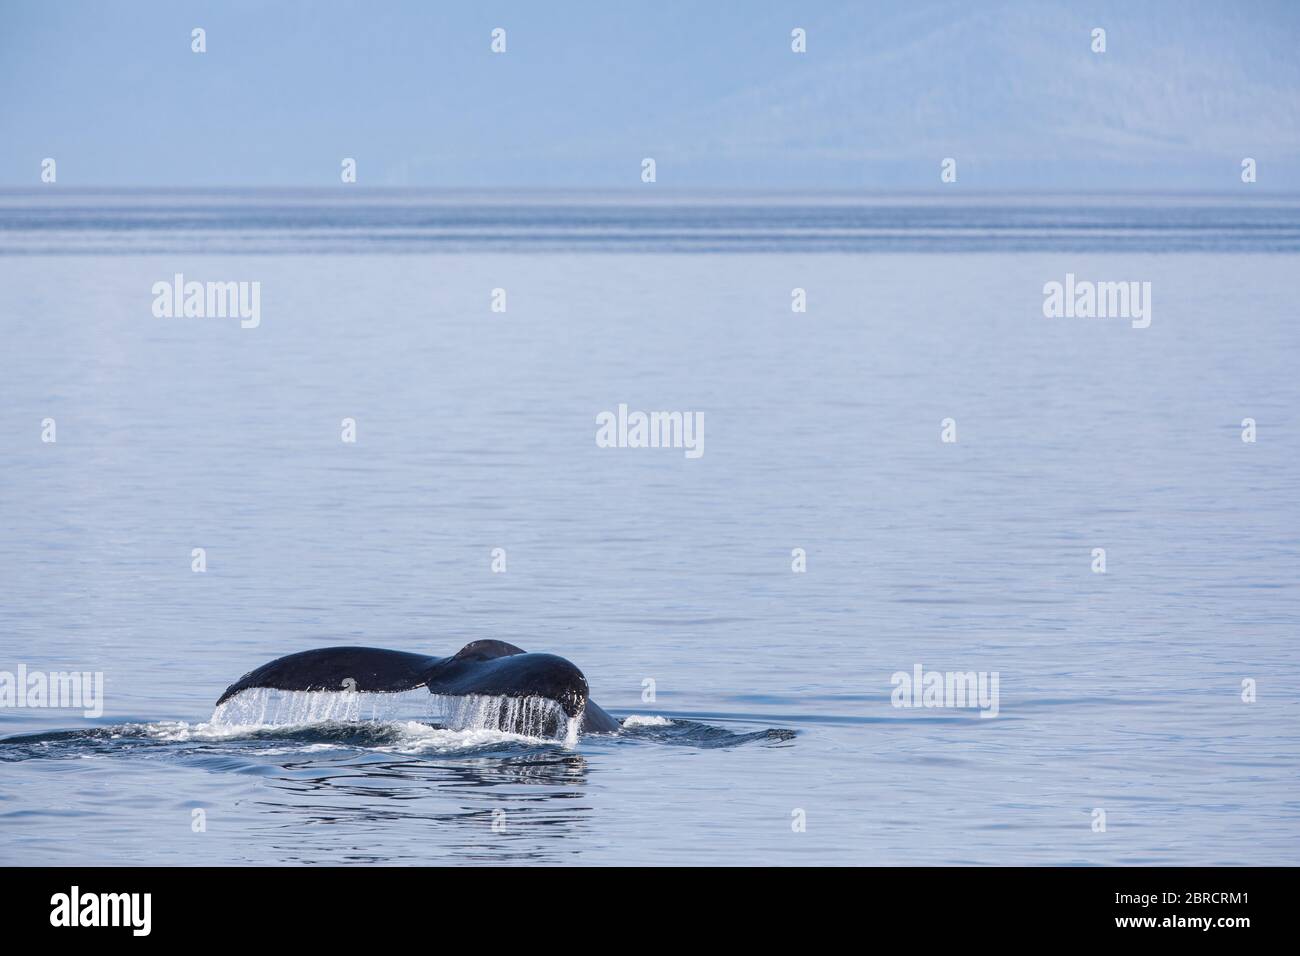 Frederick Sound nel passaggio interno è un luogo popolare per guardare la balena Humpback, Megaptera novaeangliae, Frederick Sound, Alaska, Stati Uniti. Foto Stock